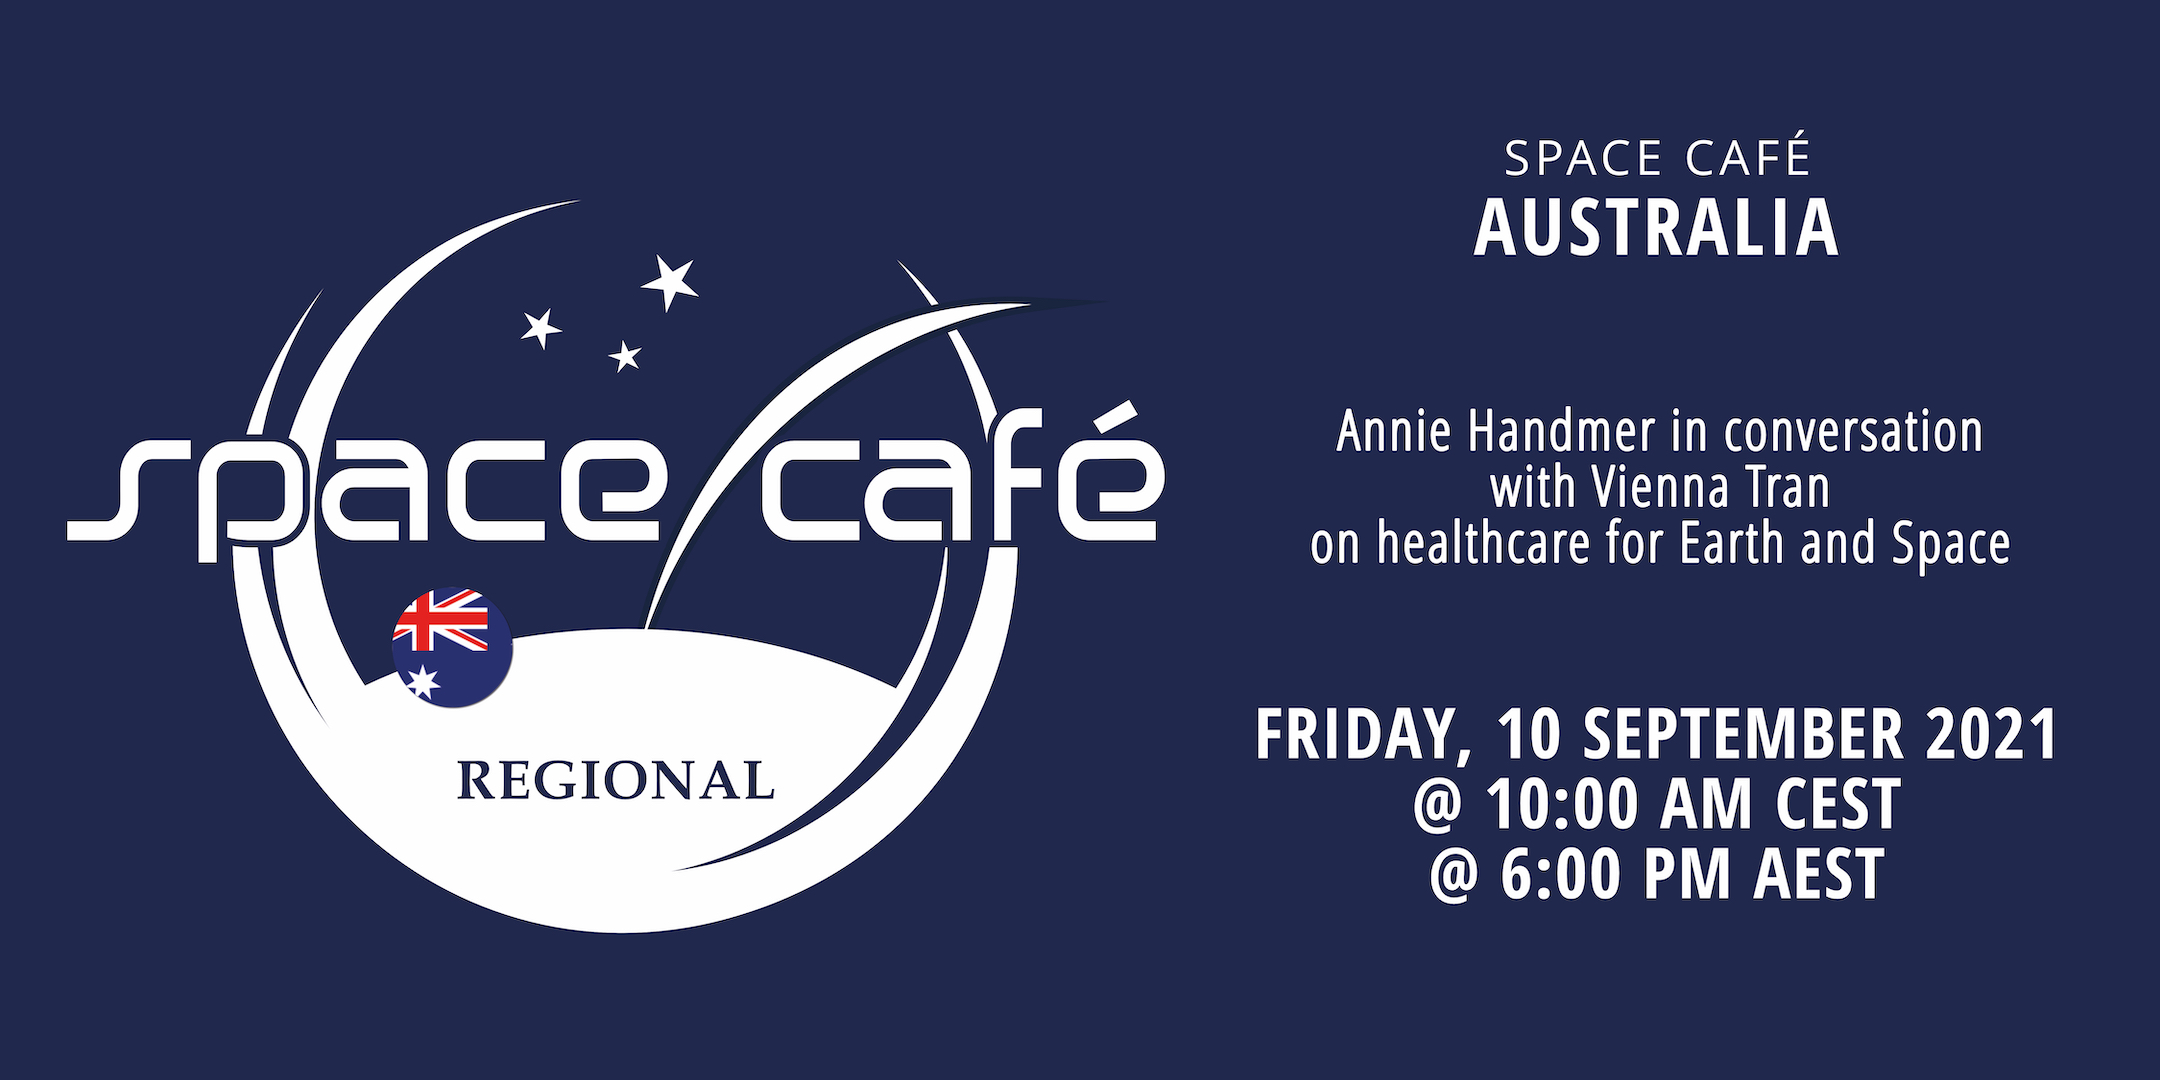 Afskrække mølle Skole lærer Register Today For Our Space Café Australia by Annie Handmer On 10  September 2021 - SpaceWatch.Global